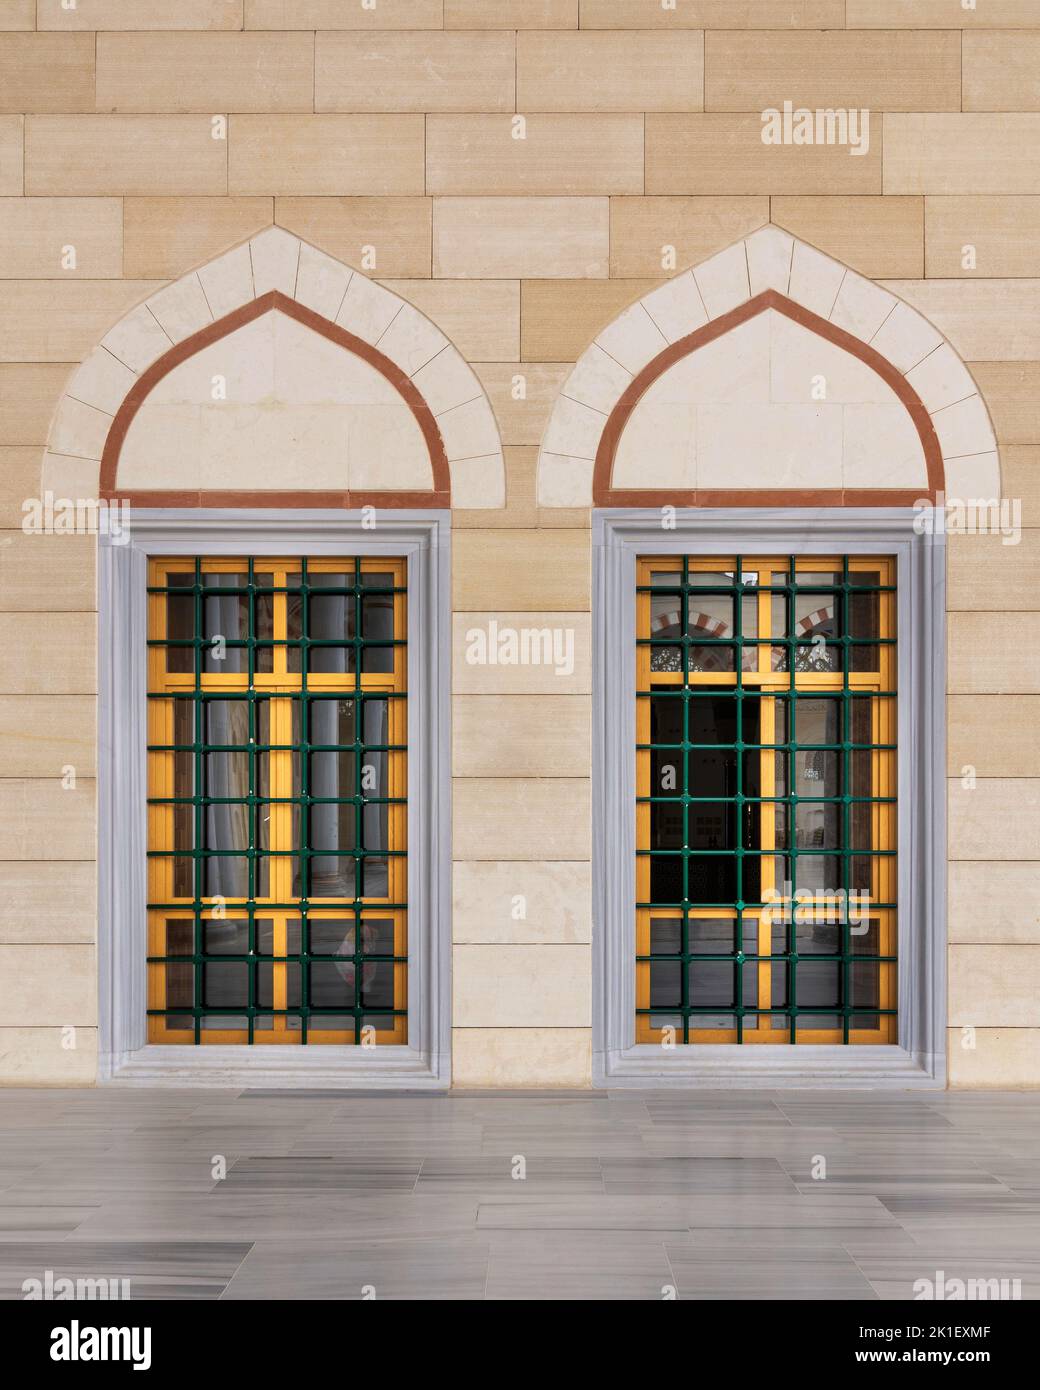 Zwei angrenzende schmiedeeiserne Bogenfenster mit modernem Architekturdesign im Innenhof der Camlica-Moschee, Istanbul, Türkei Stockfoto